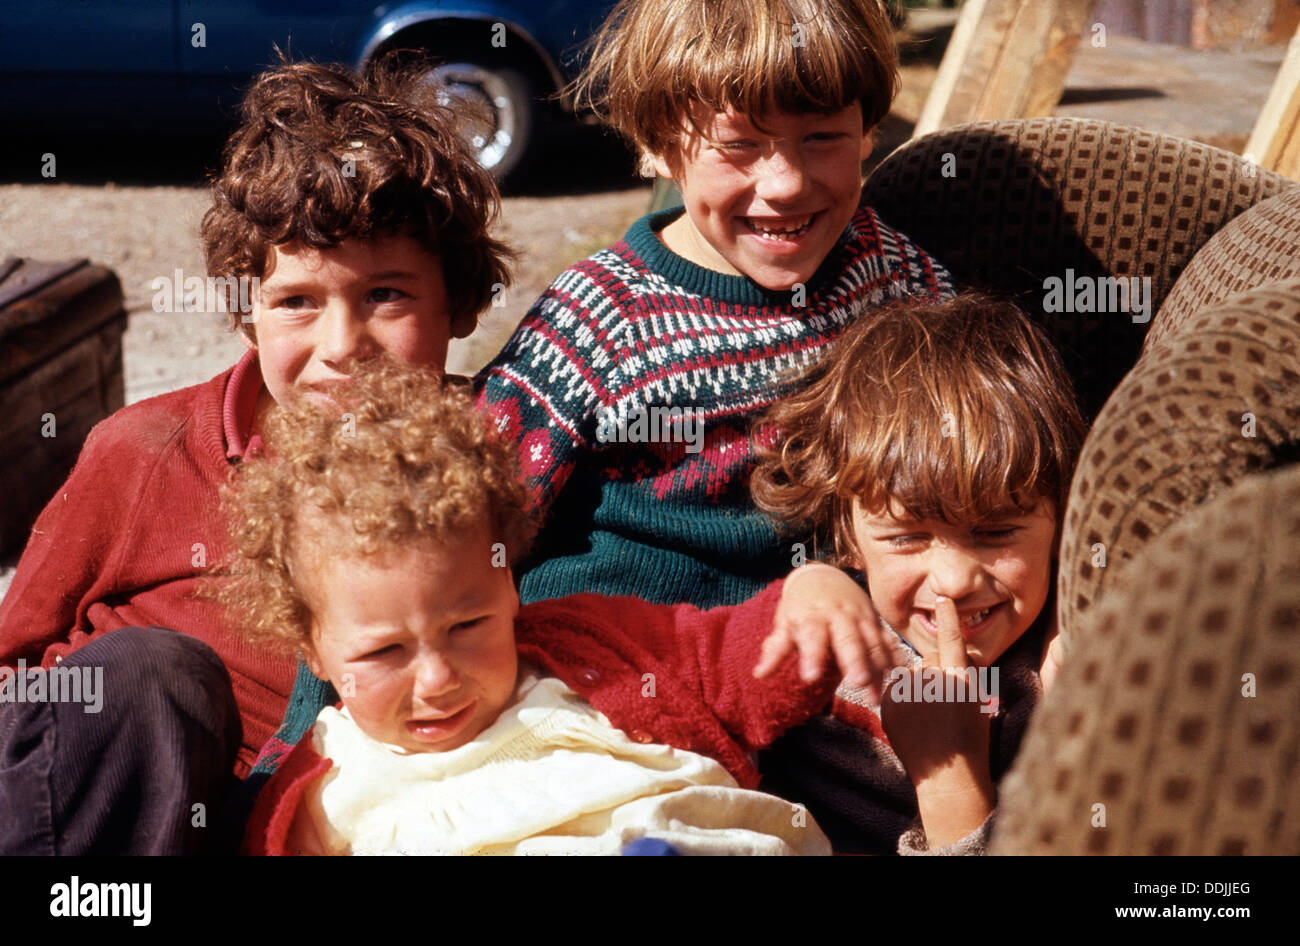 Brüder und Schwesternjungen Mädchen spielen draußen auf einem alten gepolsterten Stuhl Norwich, Norfolk, England Großbritannien England in den 1970er Jahren 1973 KATHY DEWITT Stockfoto